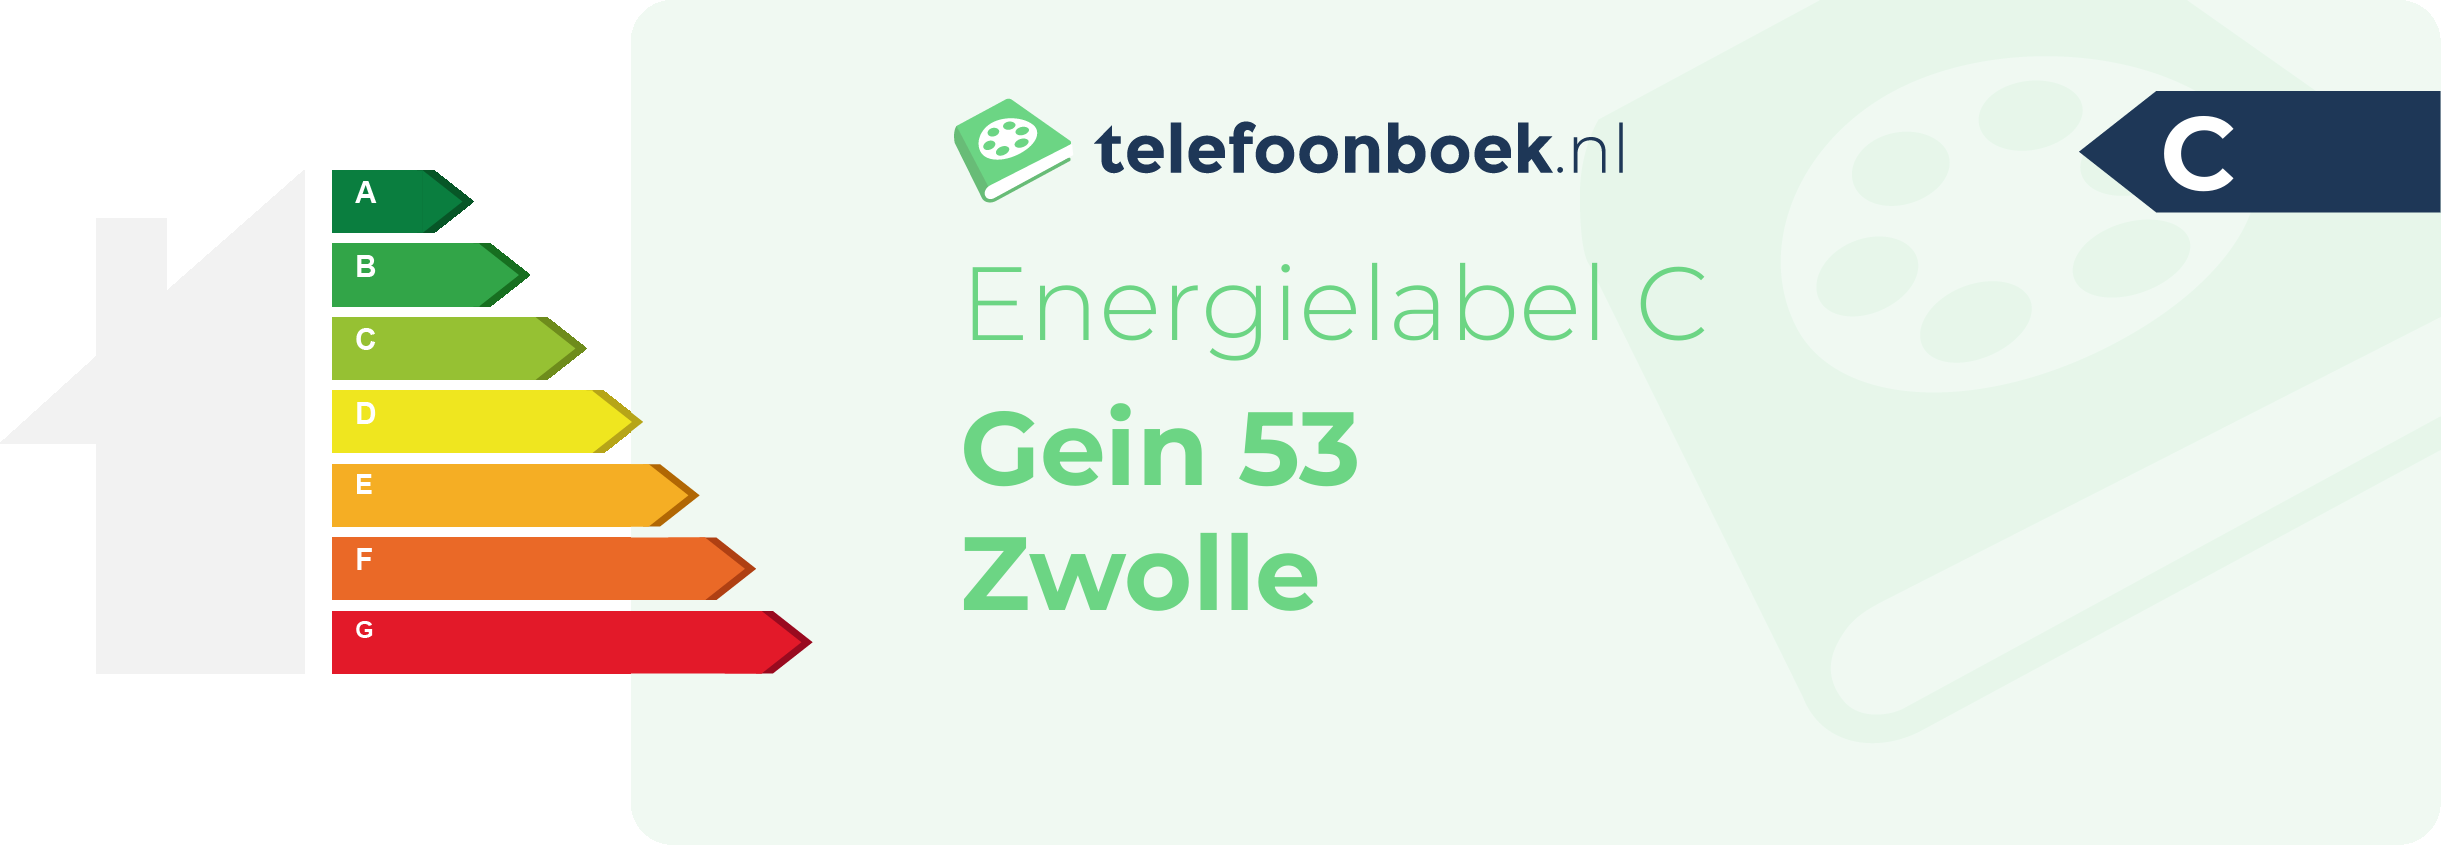 Energielabel Gein 53 Zwolle